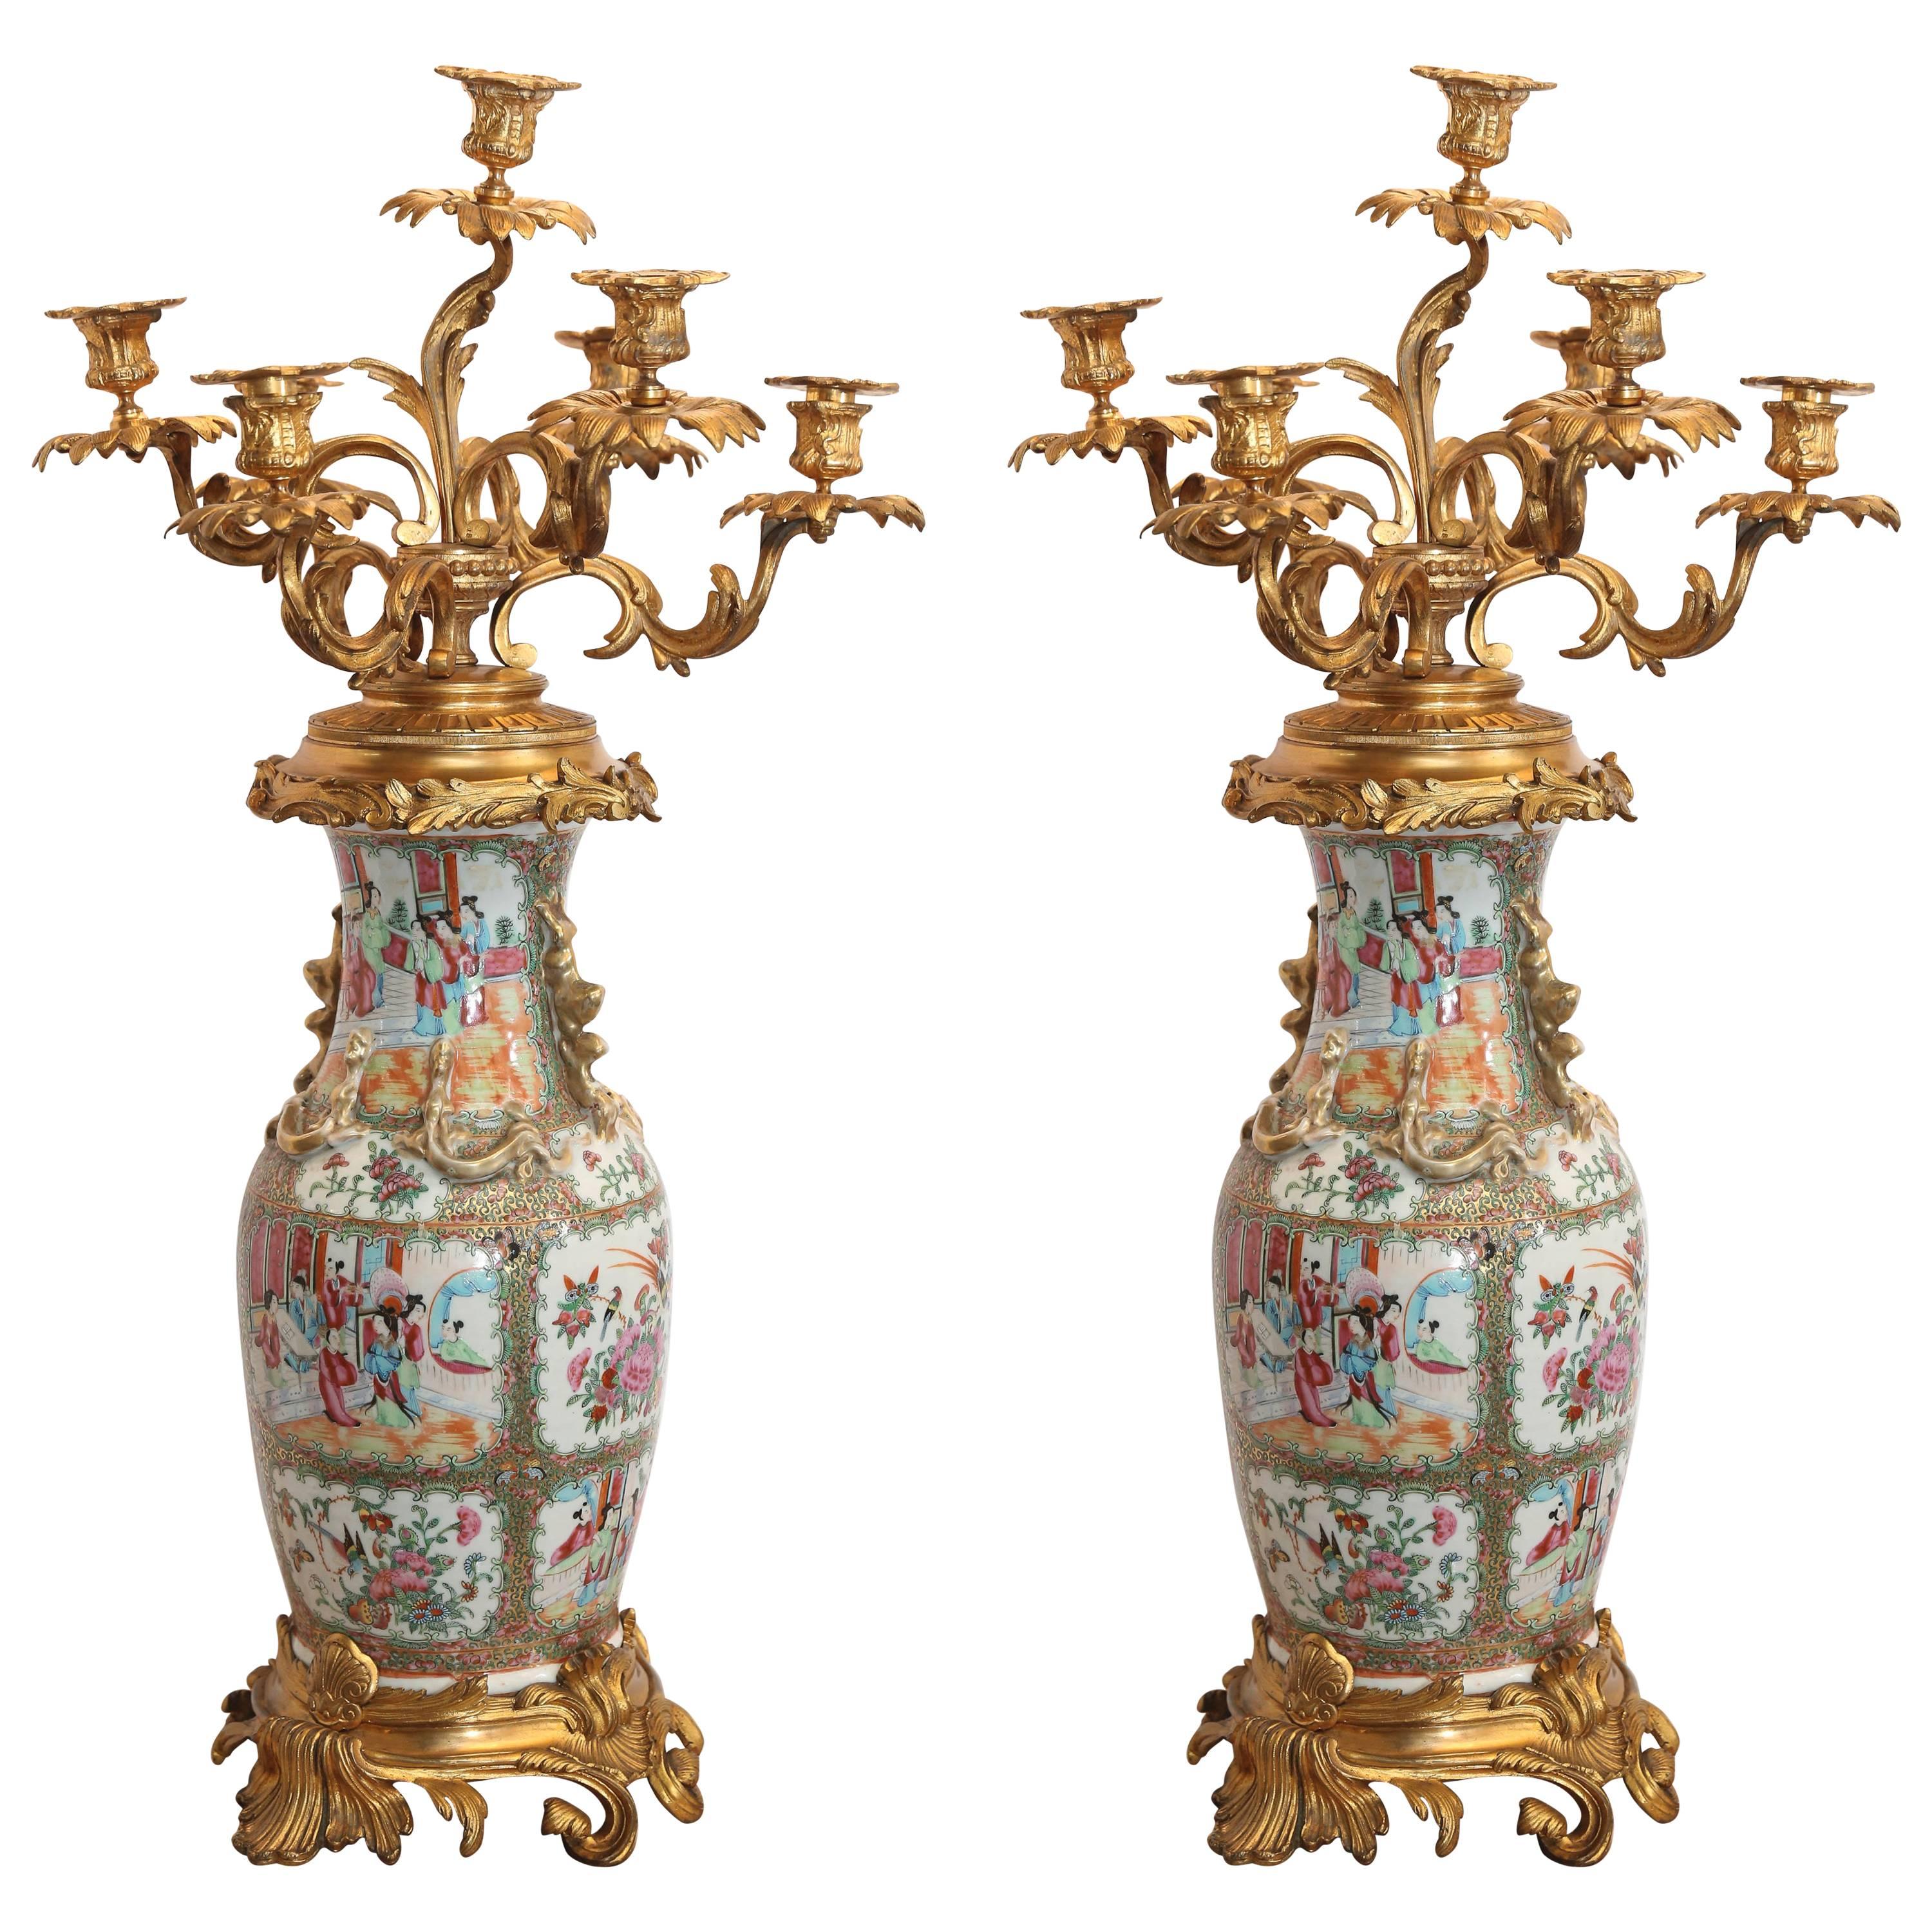 Paar Rosenmedaillon-Porzellan-Kandelaber in vergoldeter Bronze, 19. Jahrhundert